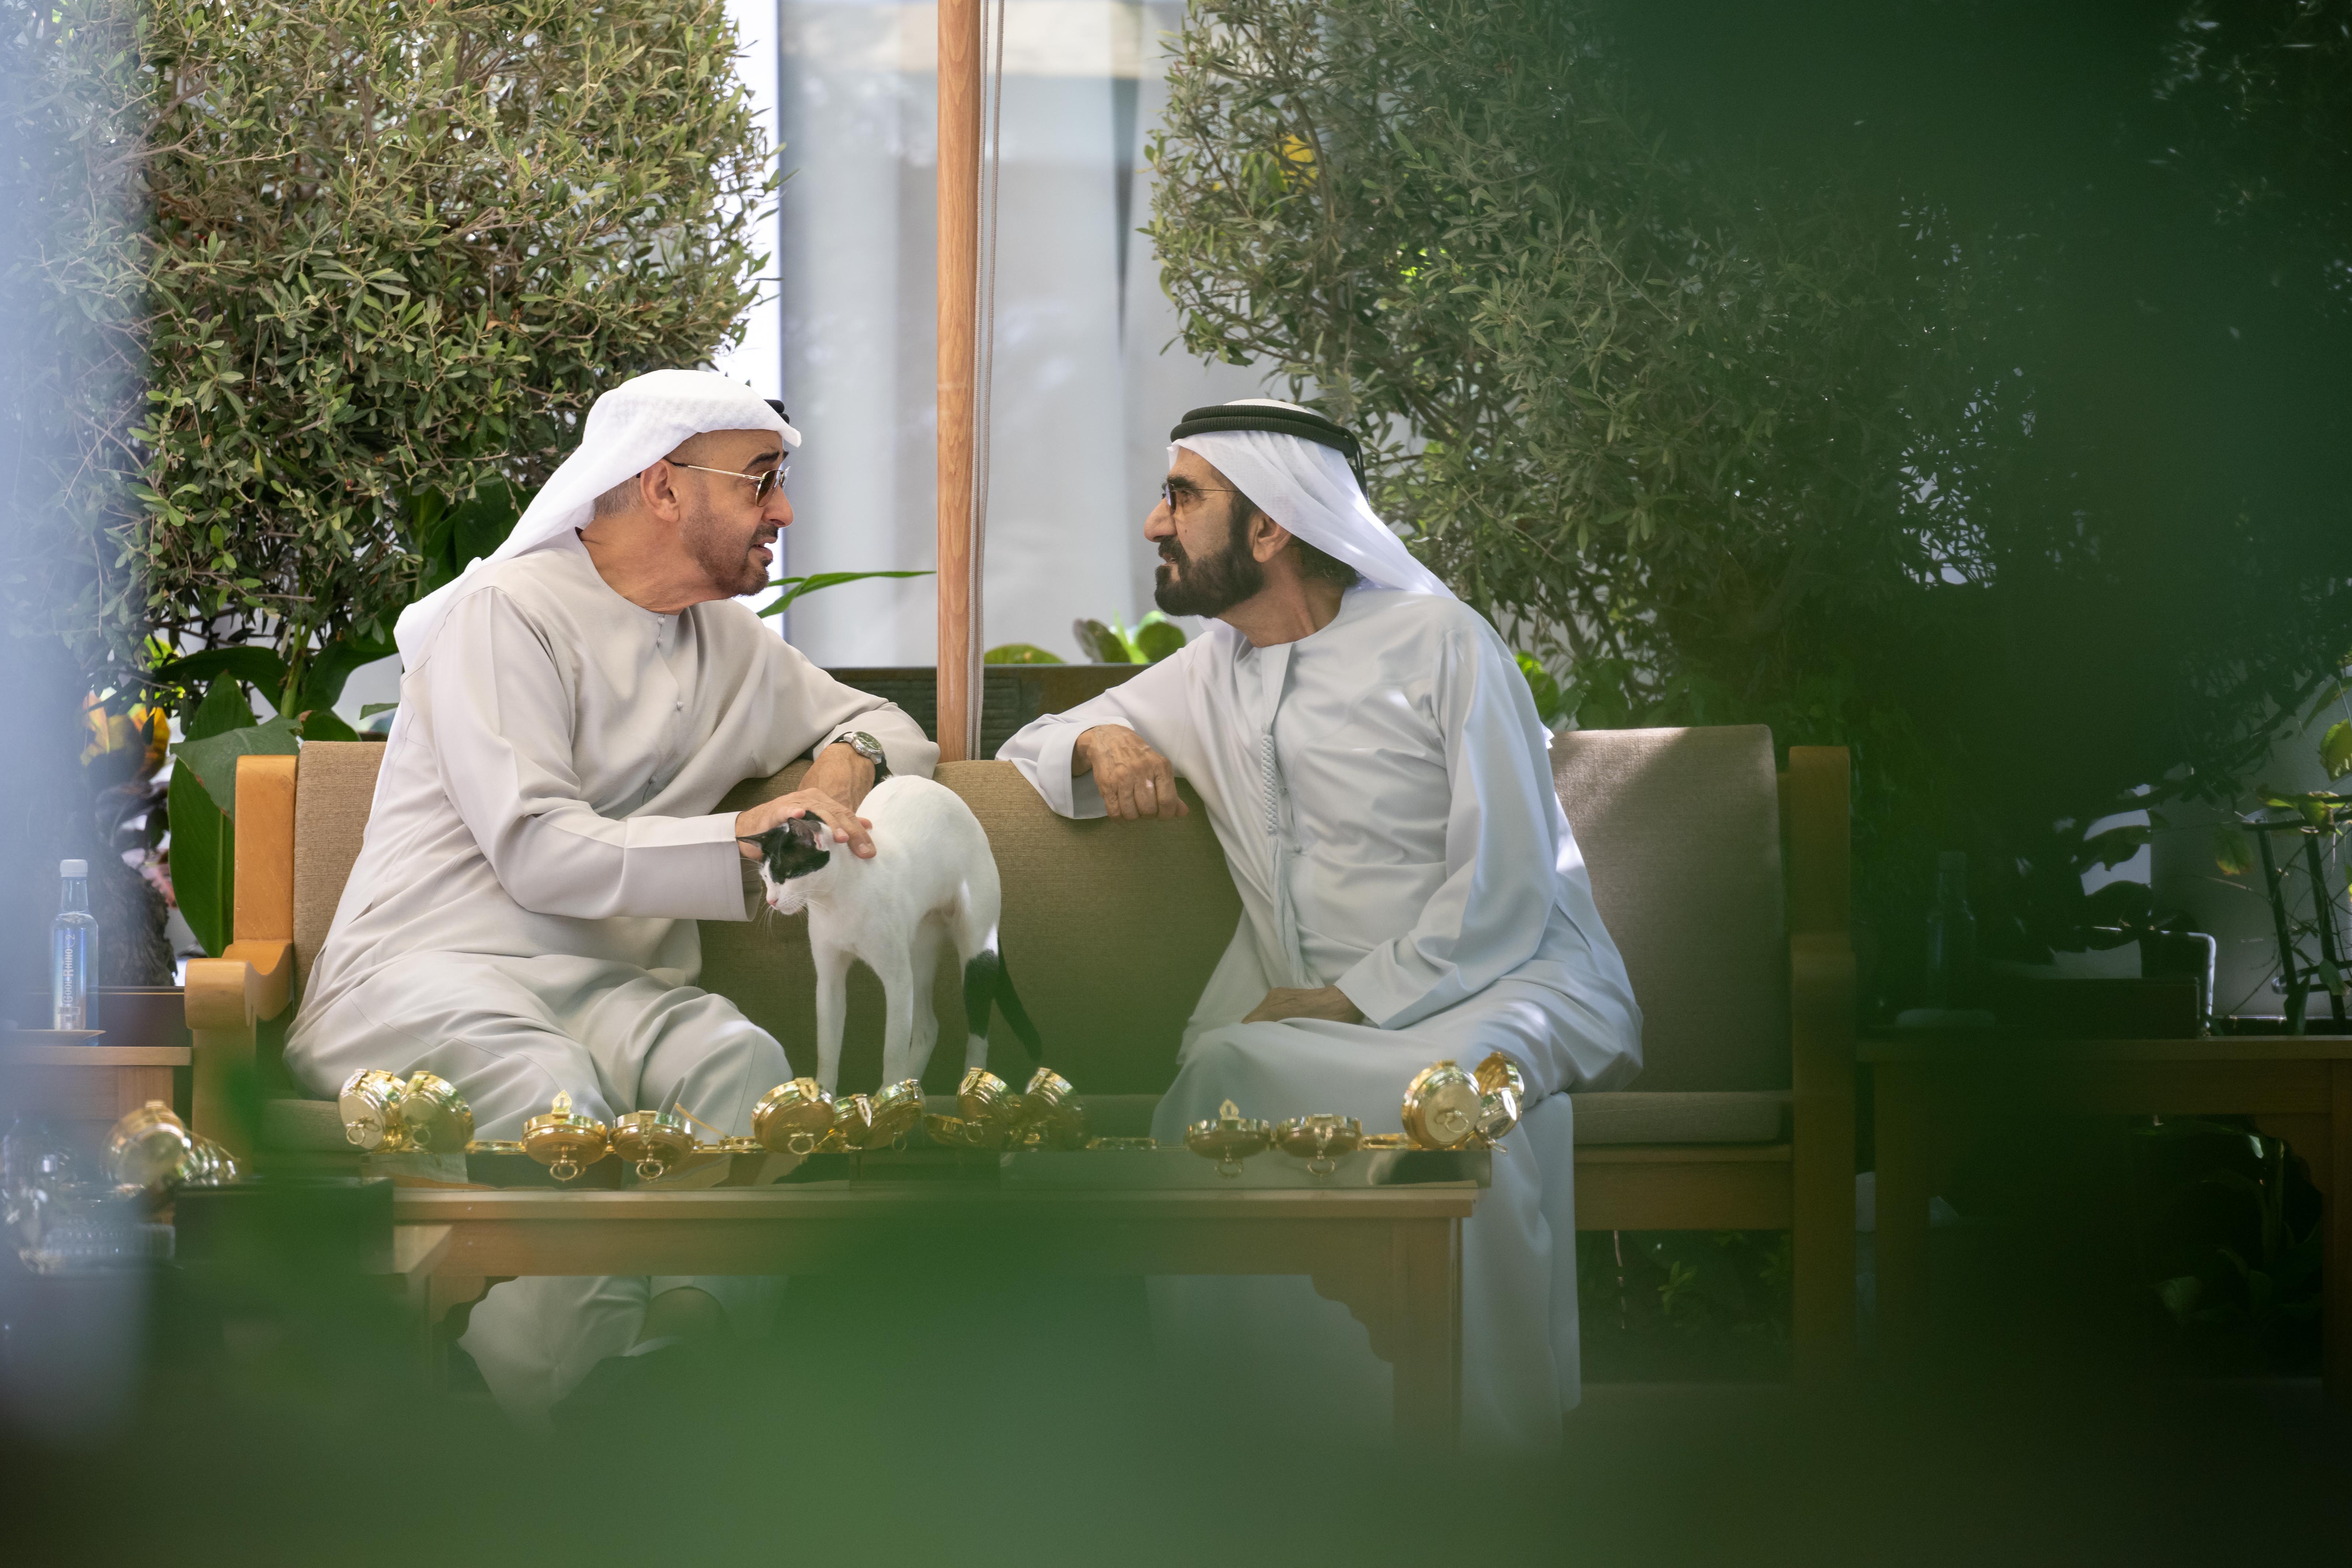 رئيس الدولة يلتقي أخاه محمد بن راشد في دبي